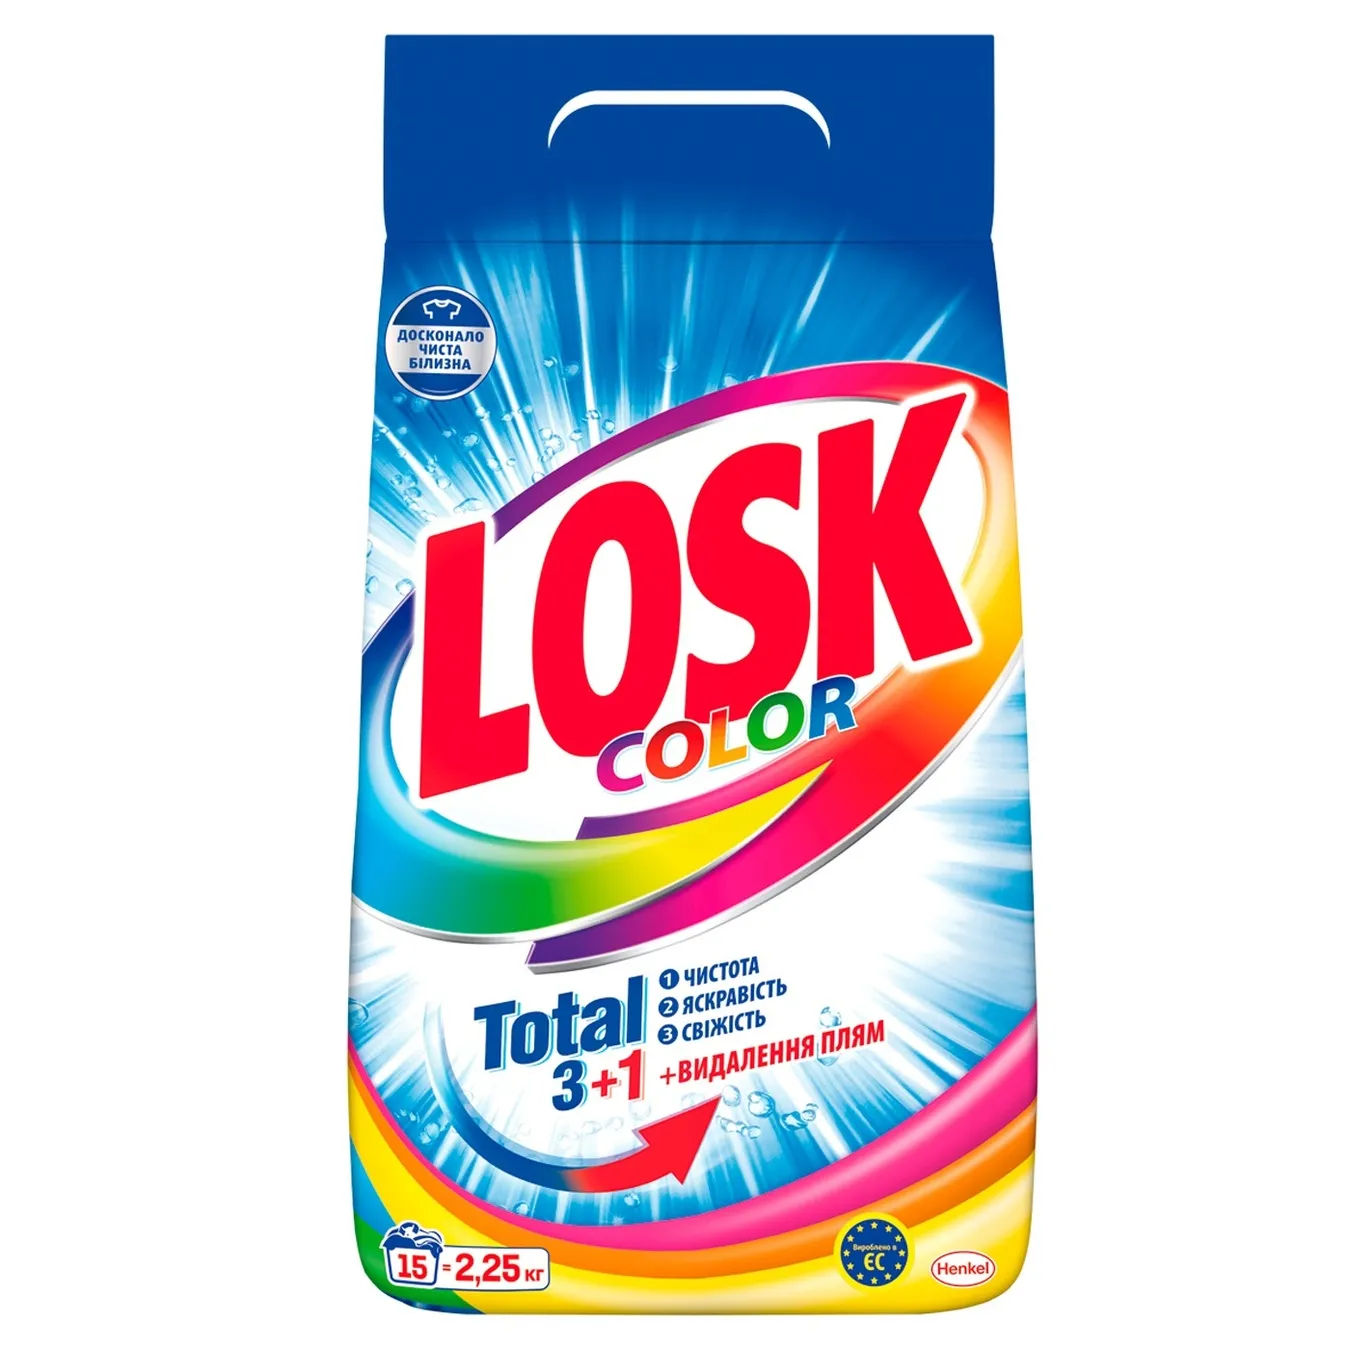 Порошок Losk для прання кольорових речей автомат 15 циклів 2,25 кг